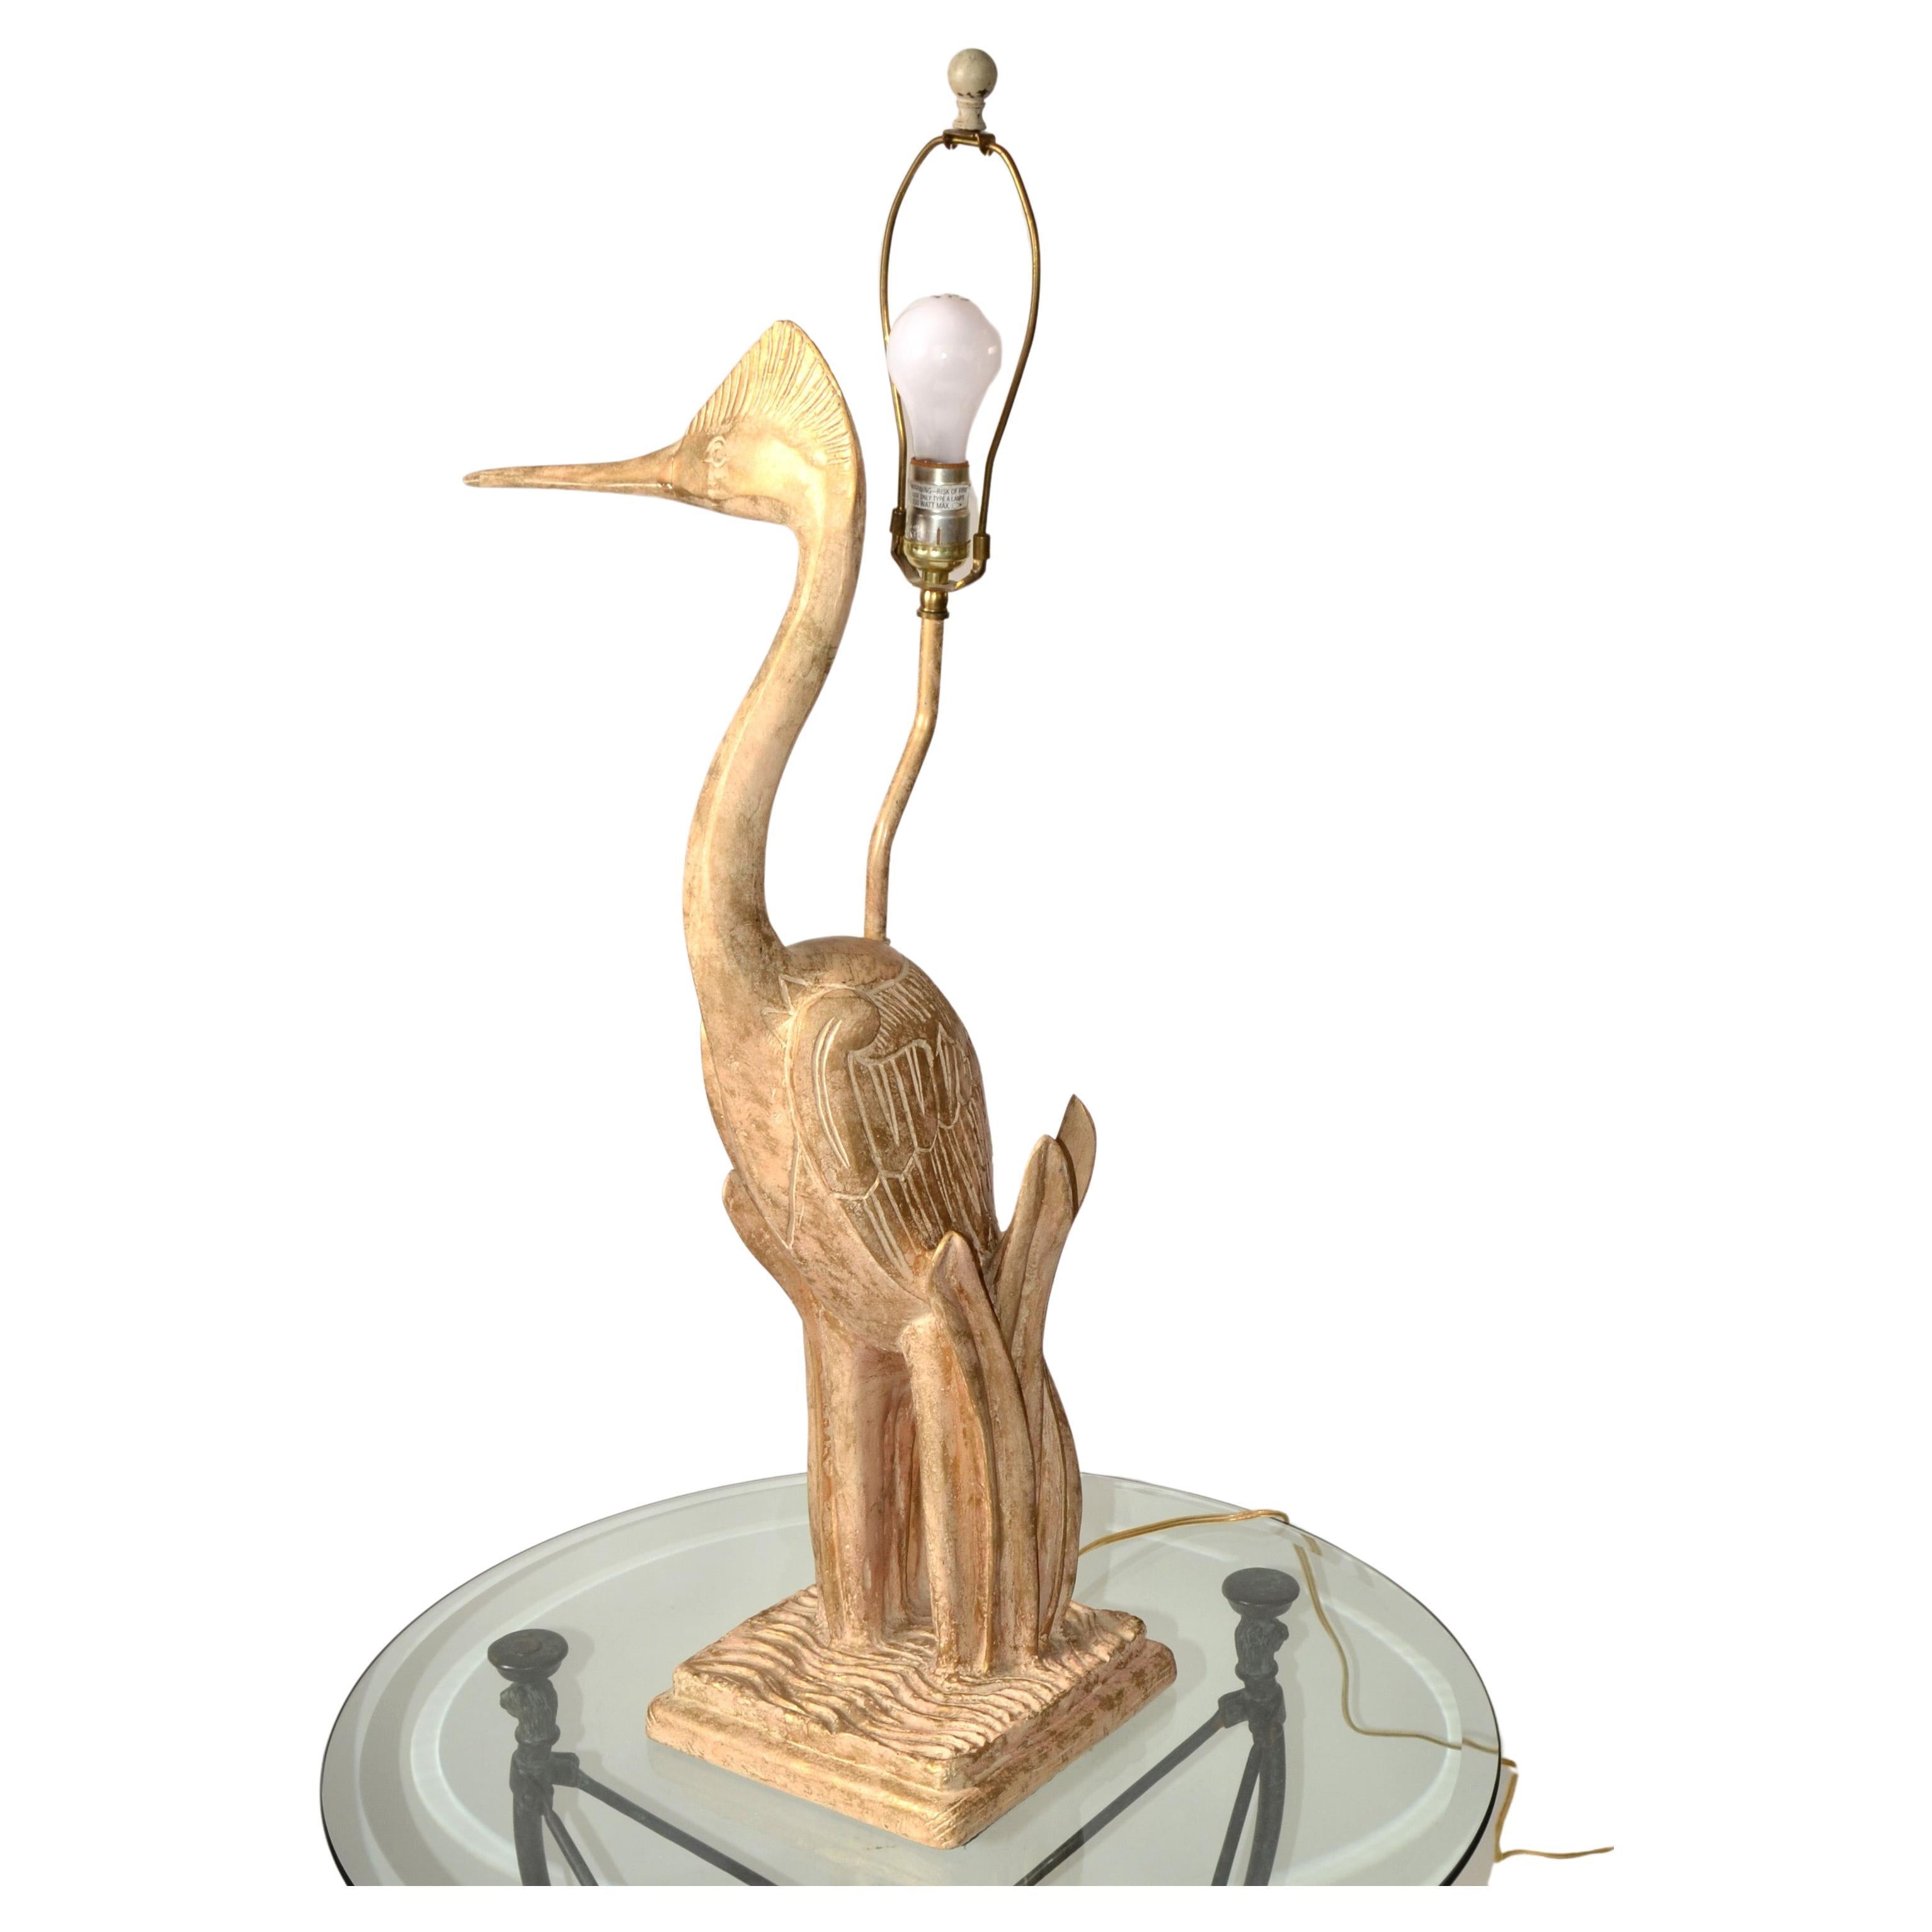 Lampe de table en bois de cèdre, sculptée à la main, représentant un héron, un oiseau et un animal, d'une hauteur de 37 pouces, avec une harpe et un embout en laiton.
L'artisanat est très détaillé et le héron est sculpté dans un seul bloc de bois.